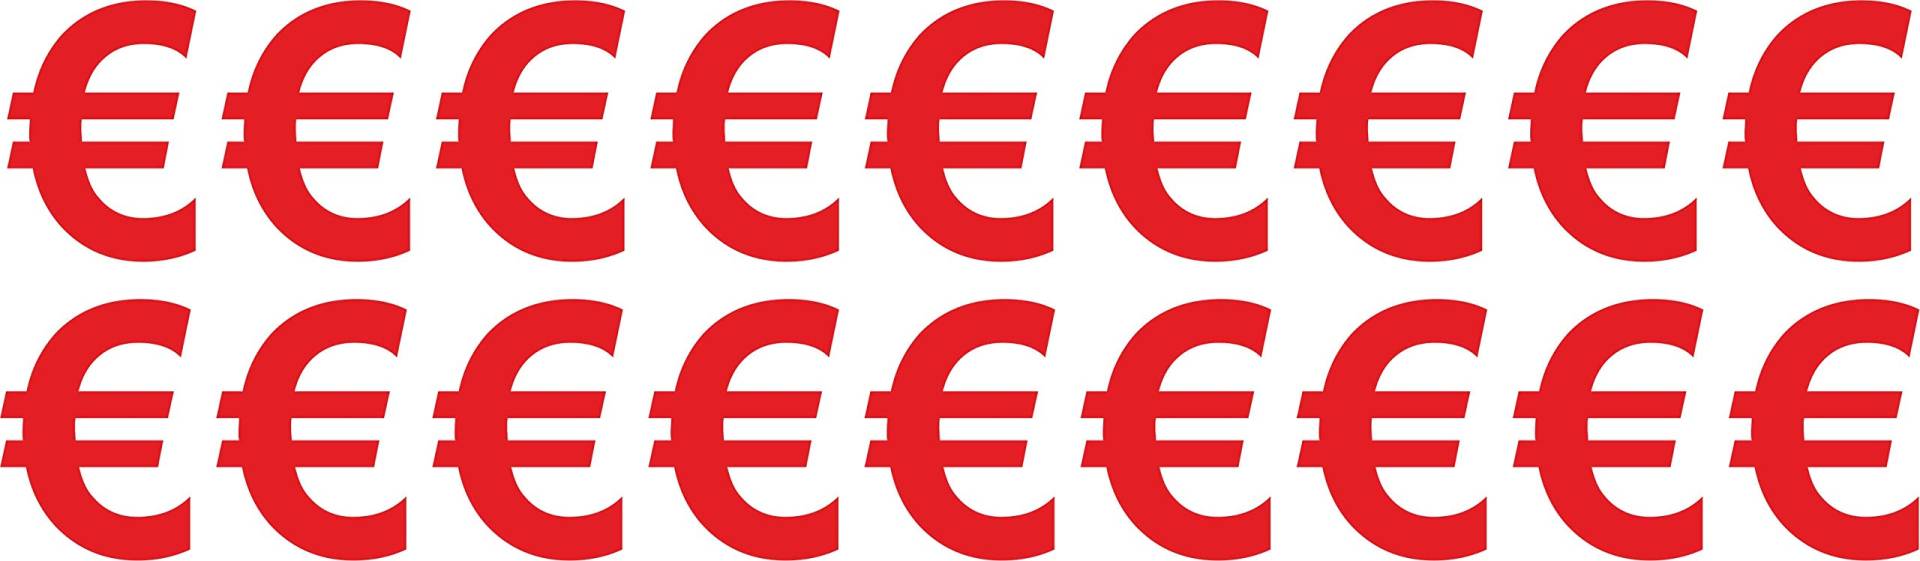 € Euro Zeichen Aufkleber 4cm Hoch - in Rot- 18 Aufkleber - Selbstklebende € Zeichen Preistafel/Preisauszeichnung - Ideal für den Außenbereich da Wasser und Wetterfest von Gradert-Elektronik